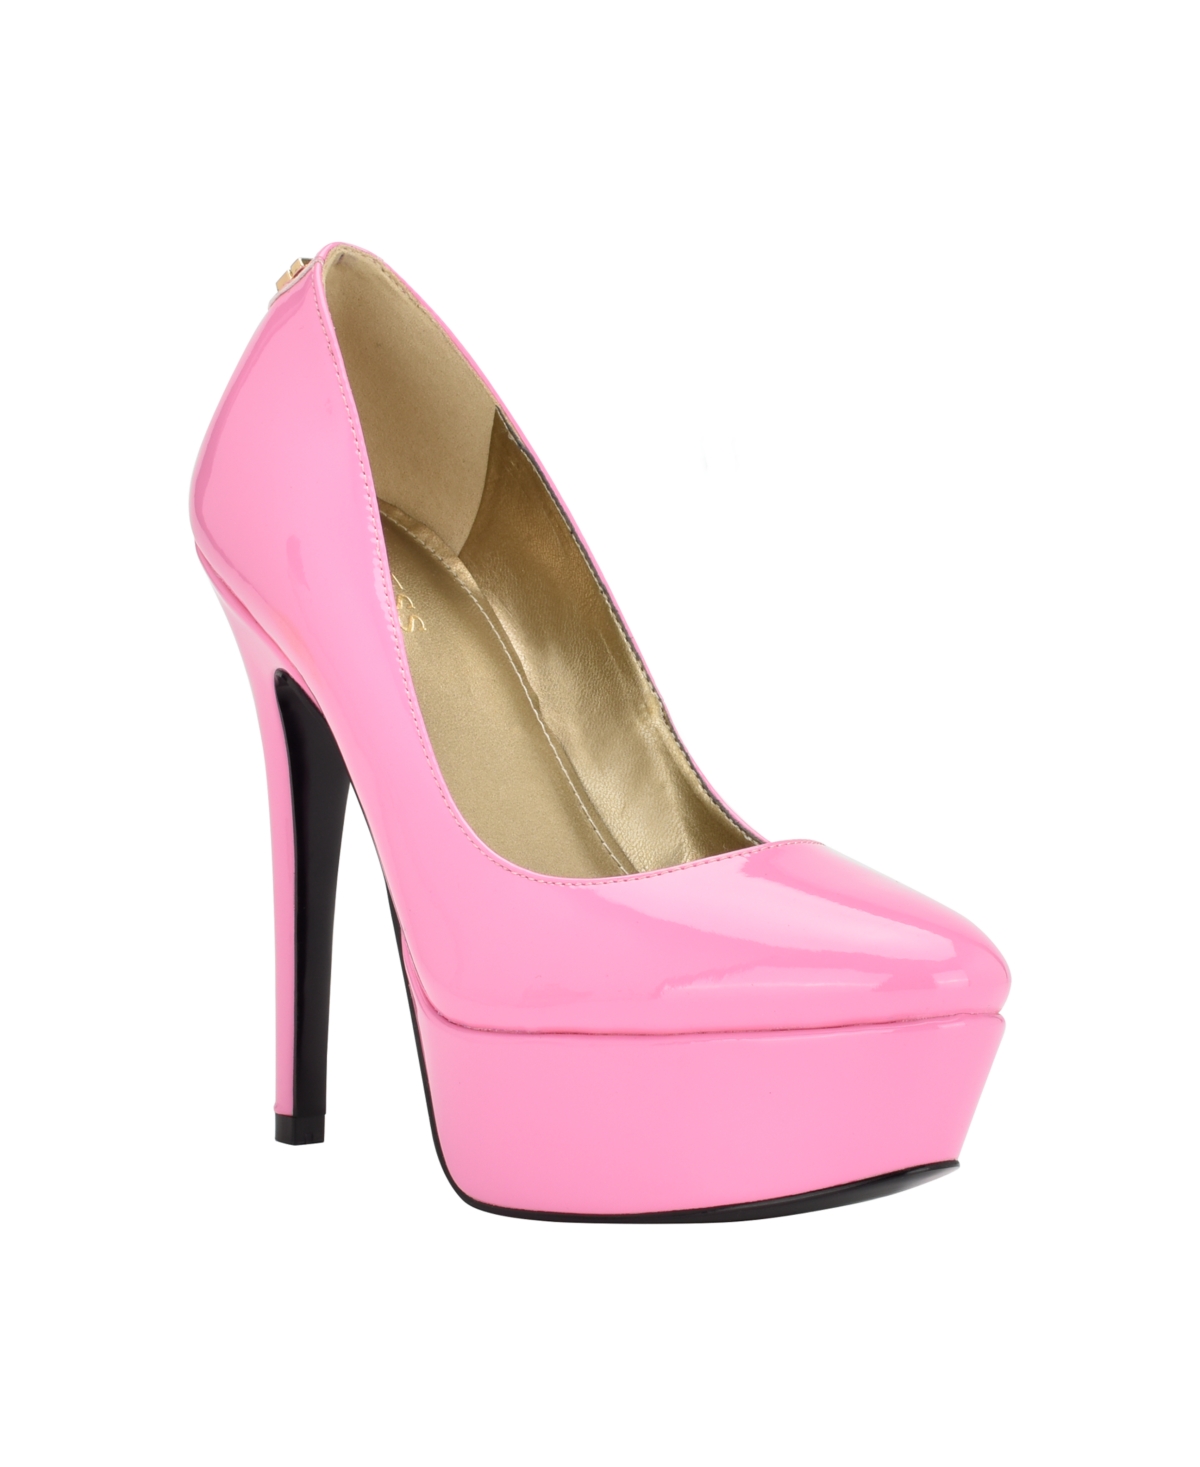 Women's Cador Platform Almond Toe Pumps - Pink Patent- Faux Patent Leather